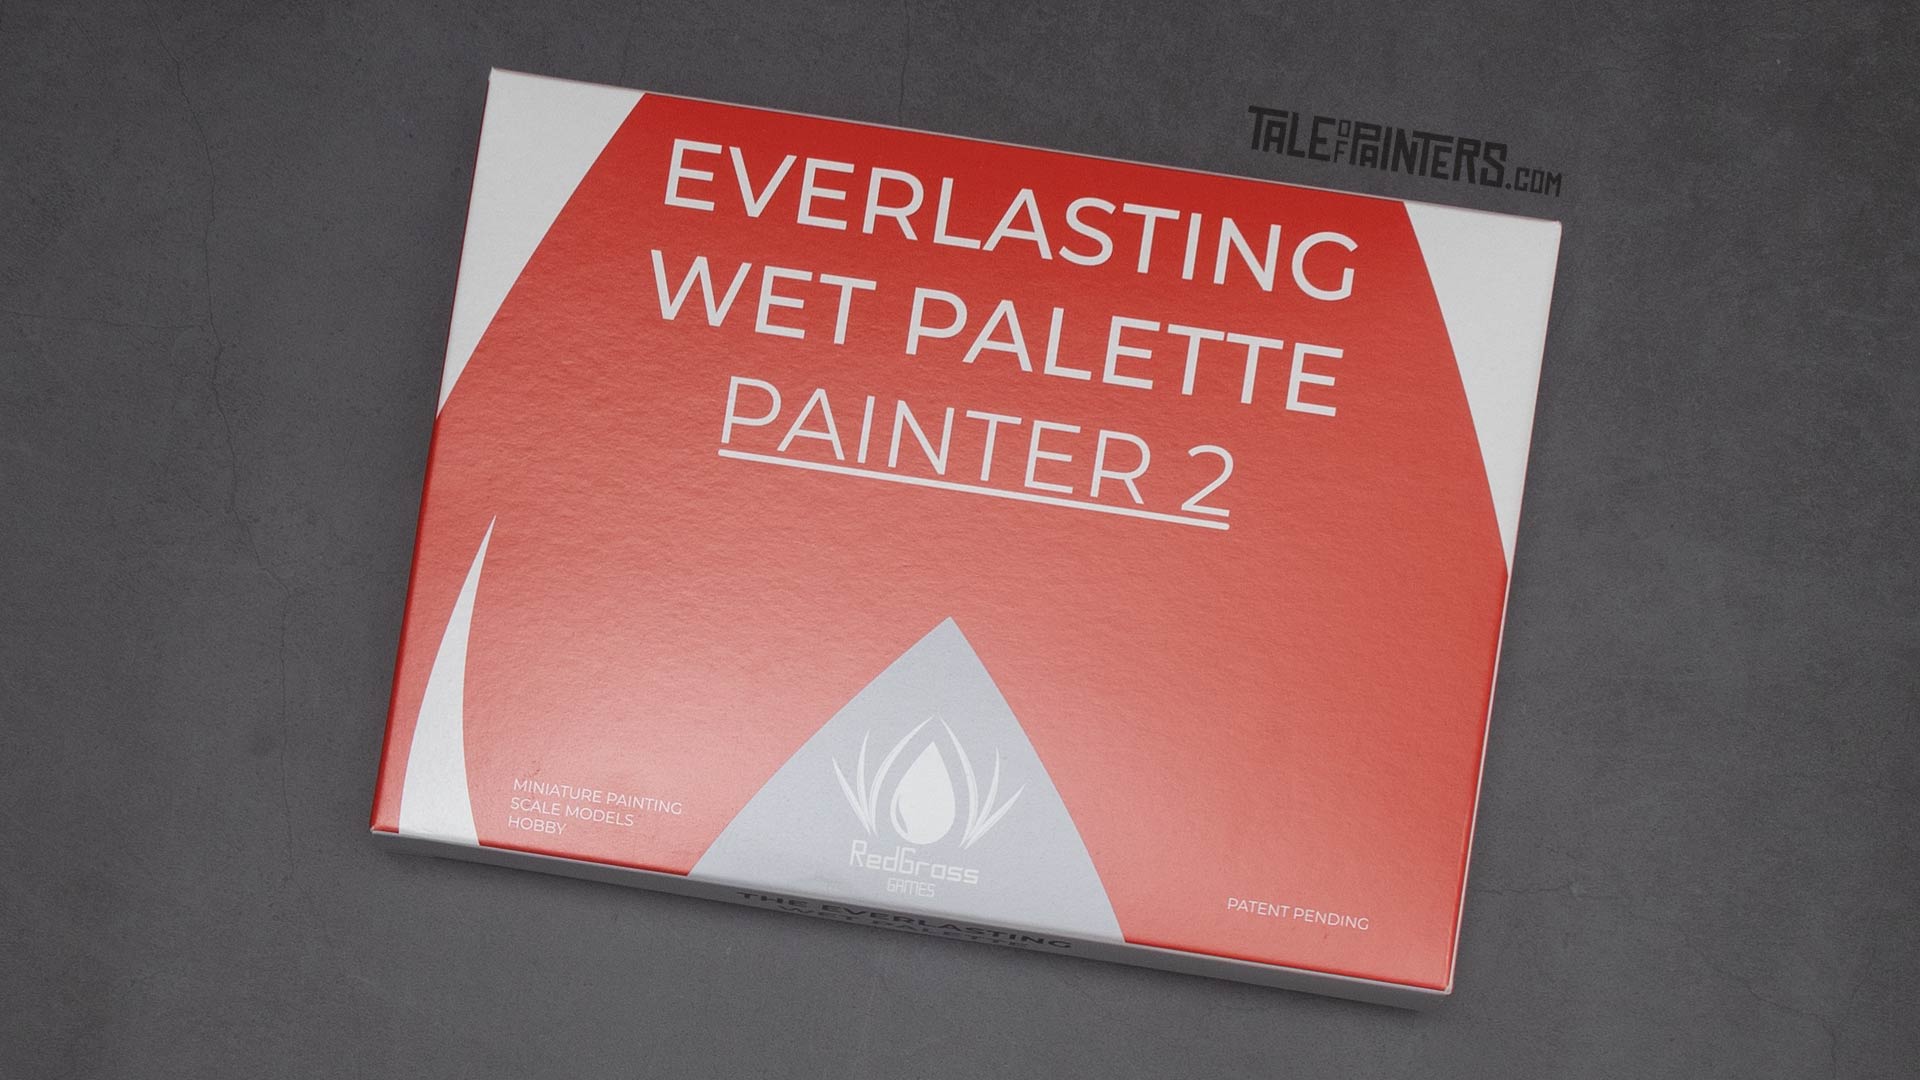 Everlasting Wet Palette Painter V2 from Redgrass Games, packaging